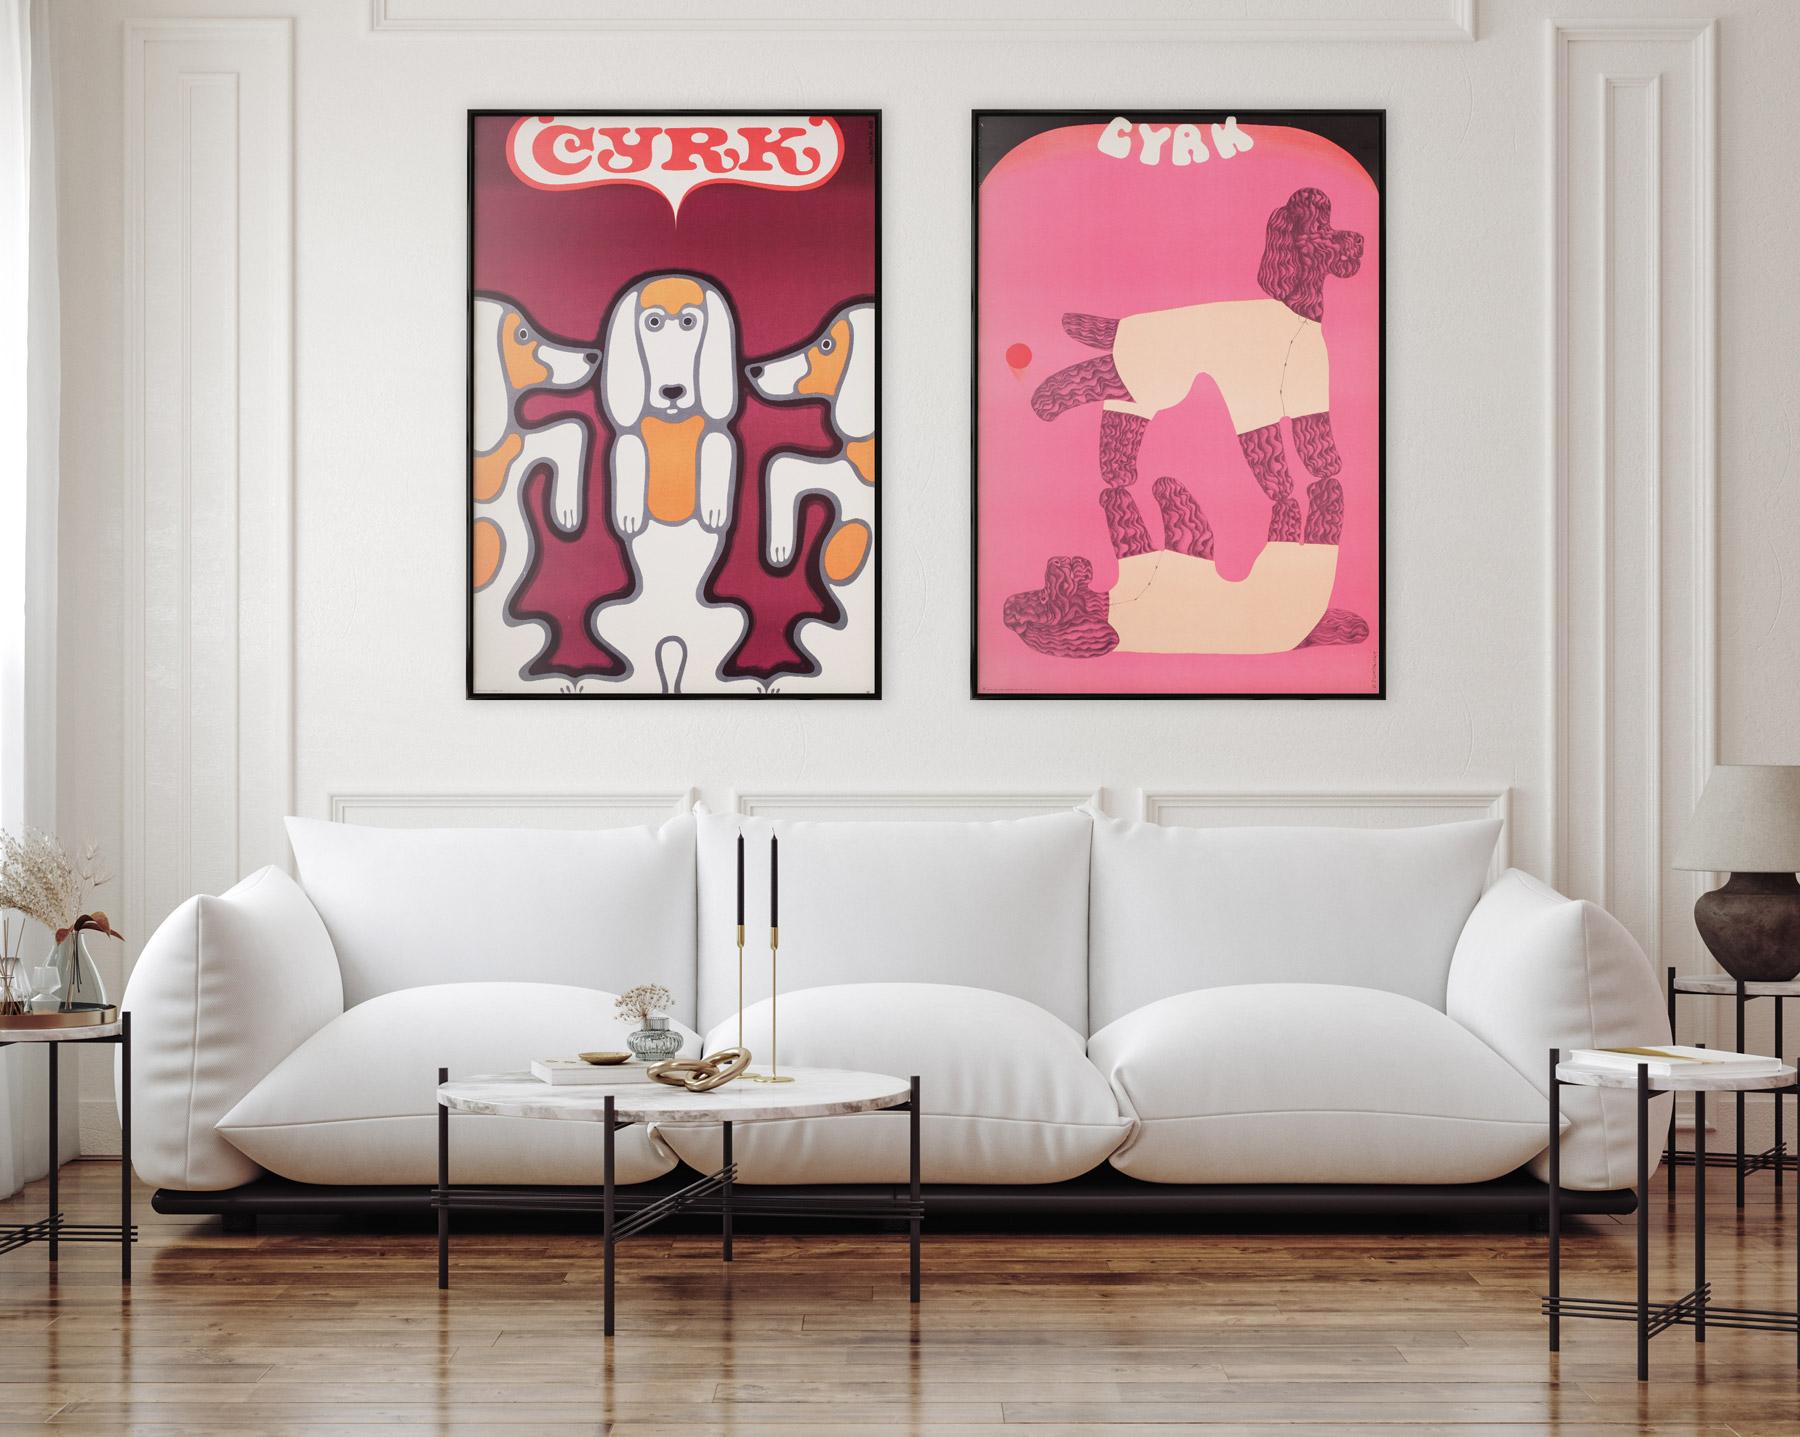 Original polnisches CRYK-Plakat aus dem Jahr 1969 mit einem fabelhaften Three Beagle's-Design von Wiktor Gorka, einem der berühmtesten polnischen Plakatkünstler. Gorkas Design ist, wie viele seiner Arbeiten, kühl, schnörkellos und zeitgemäß.

Das